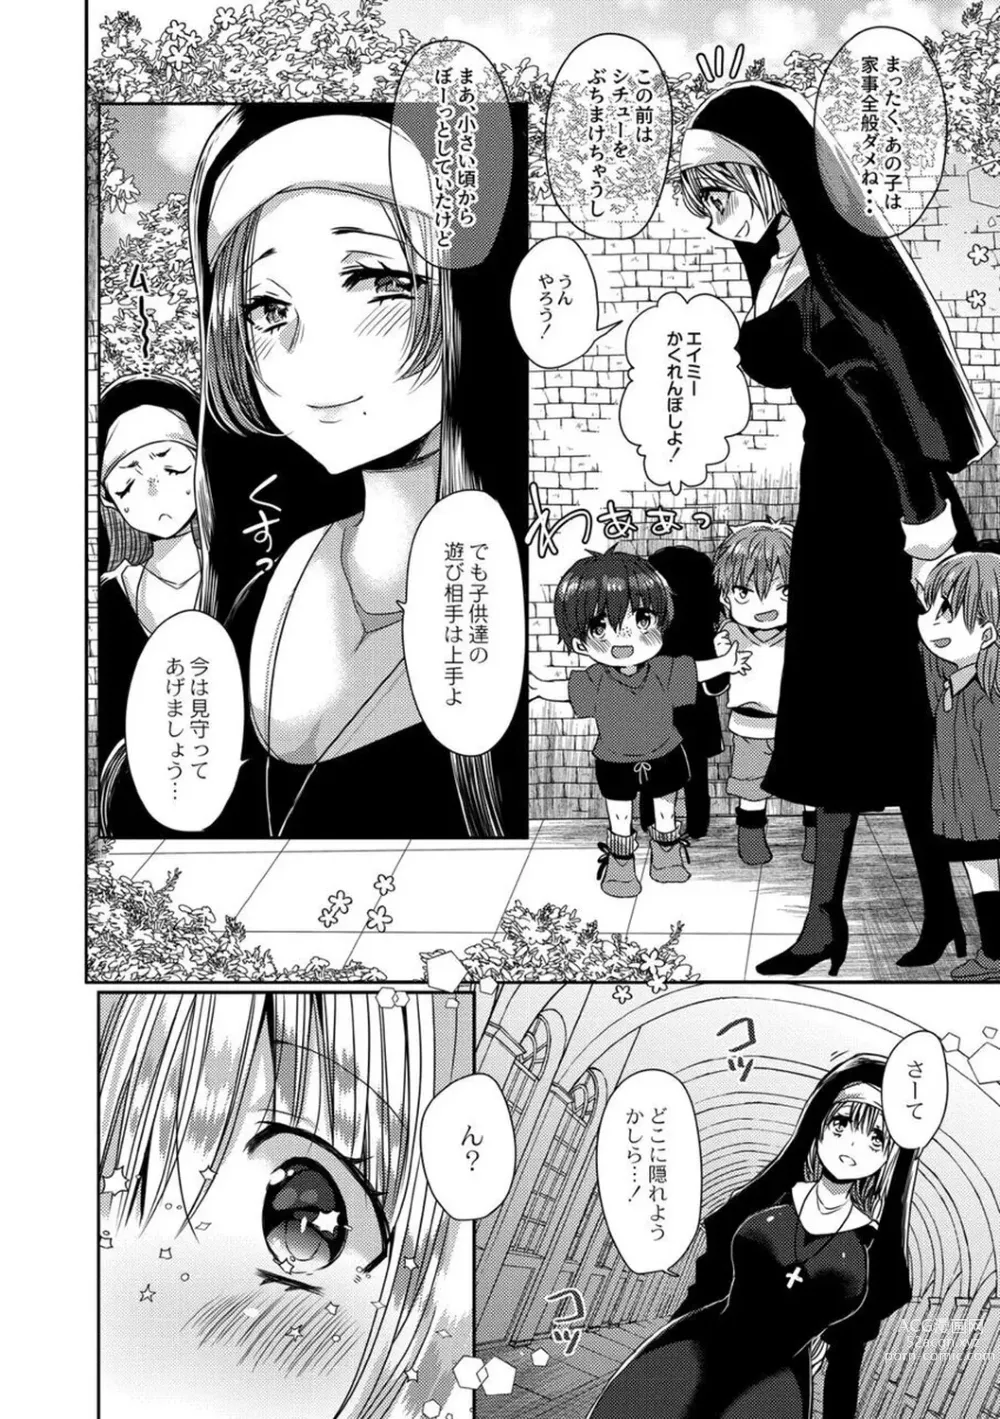 Page 6 of manga Junai Holic